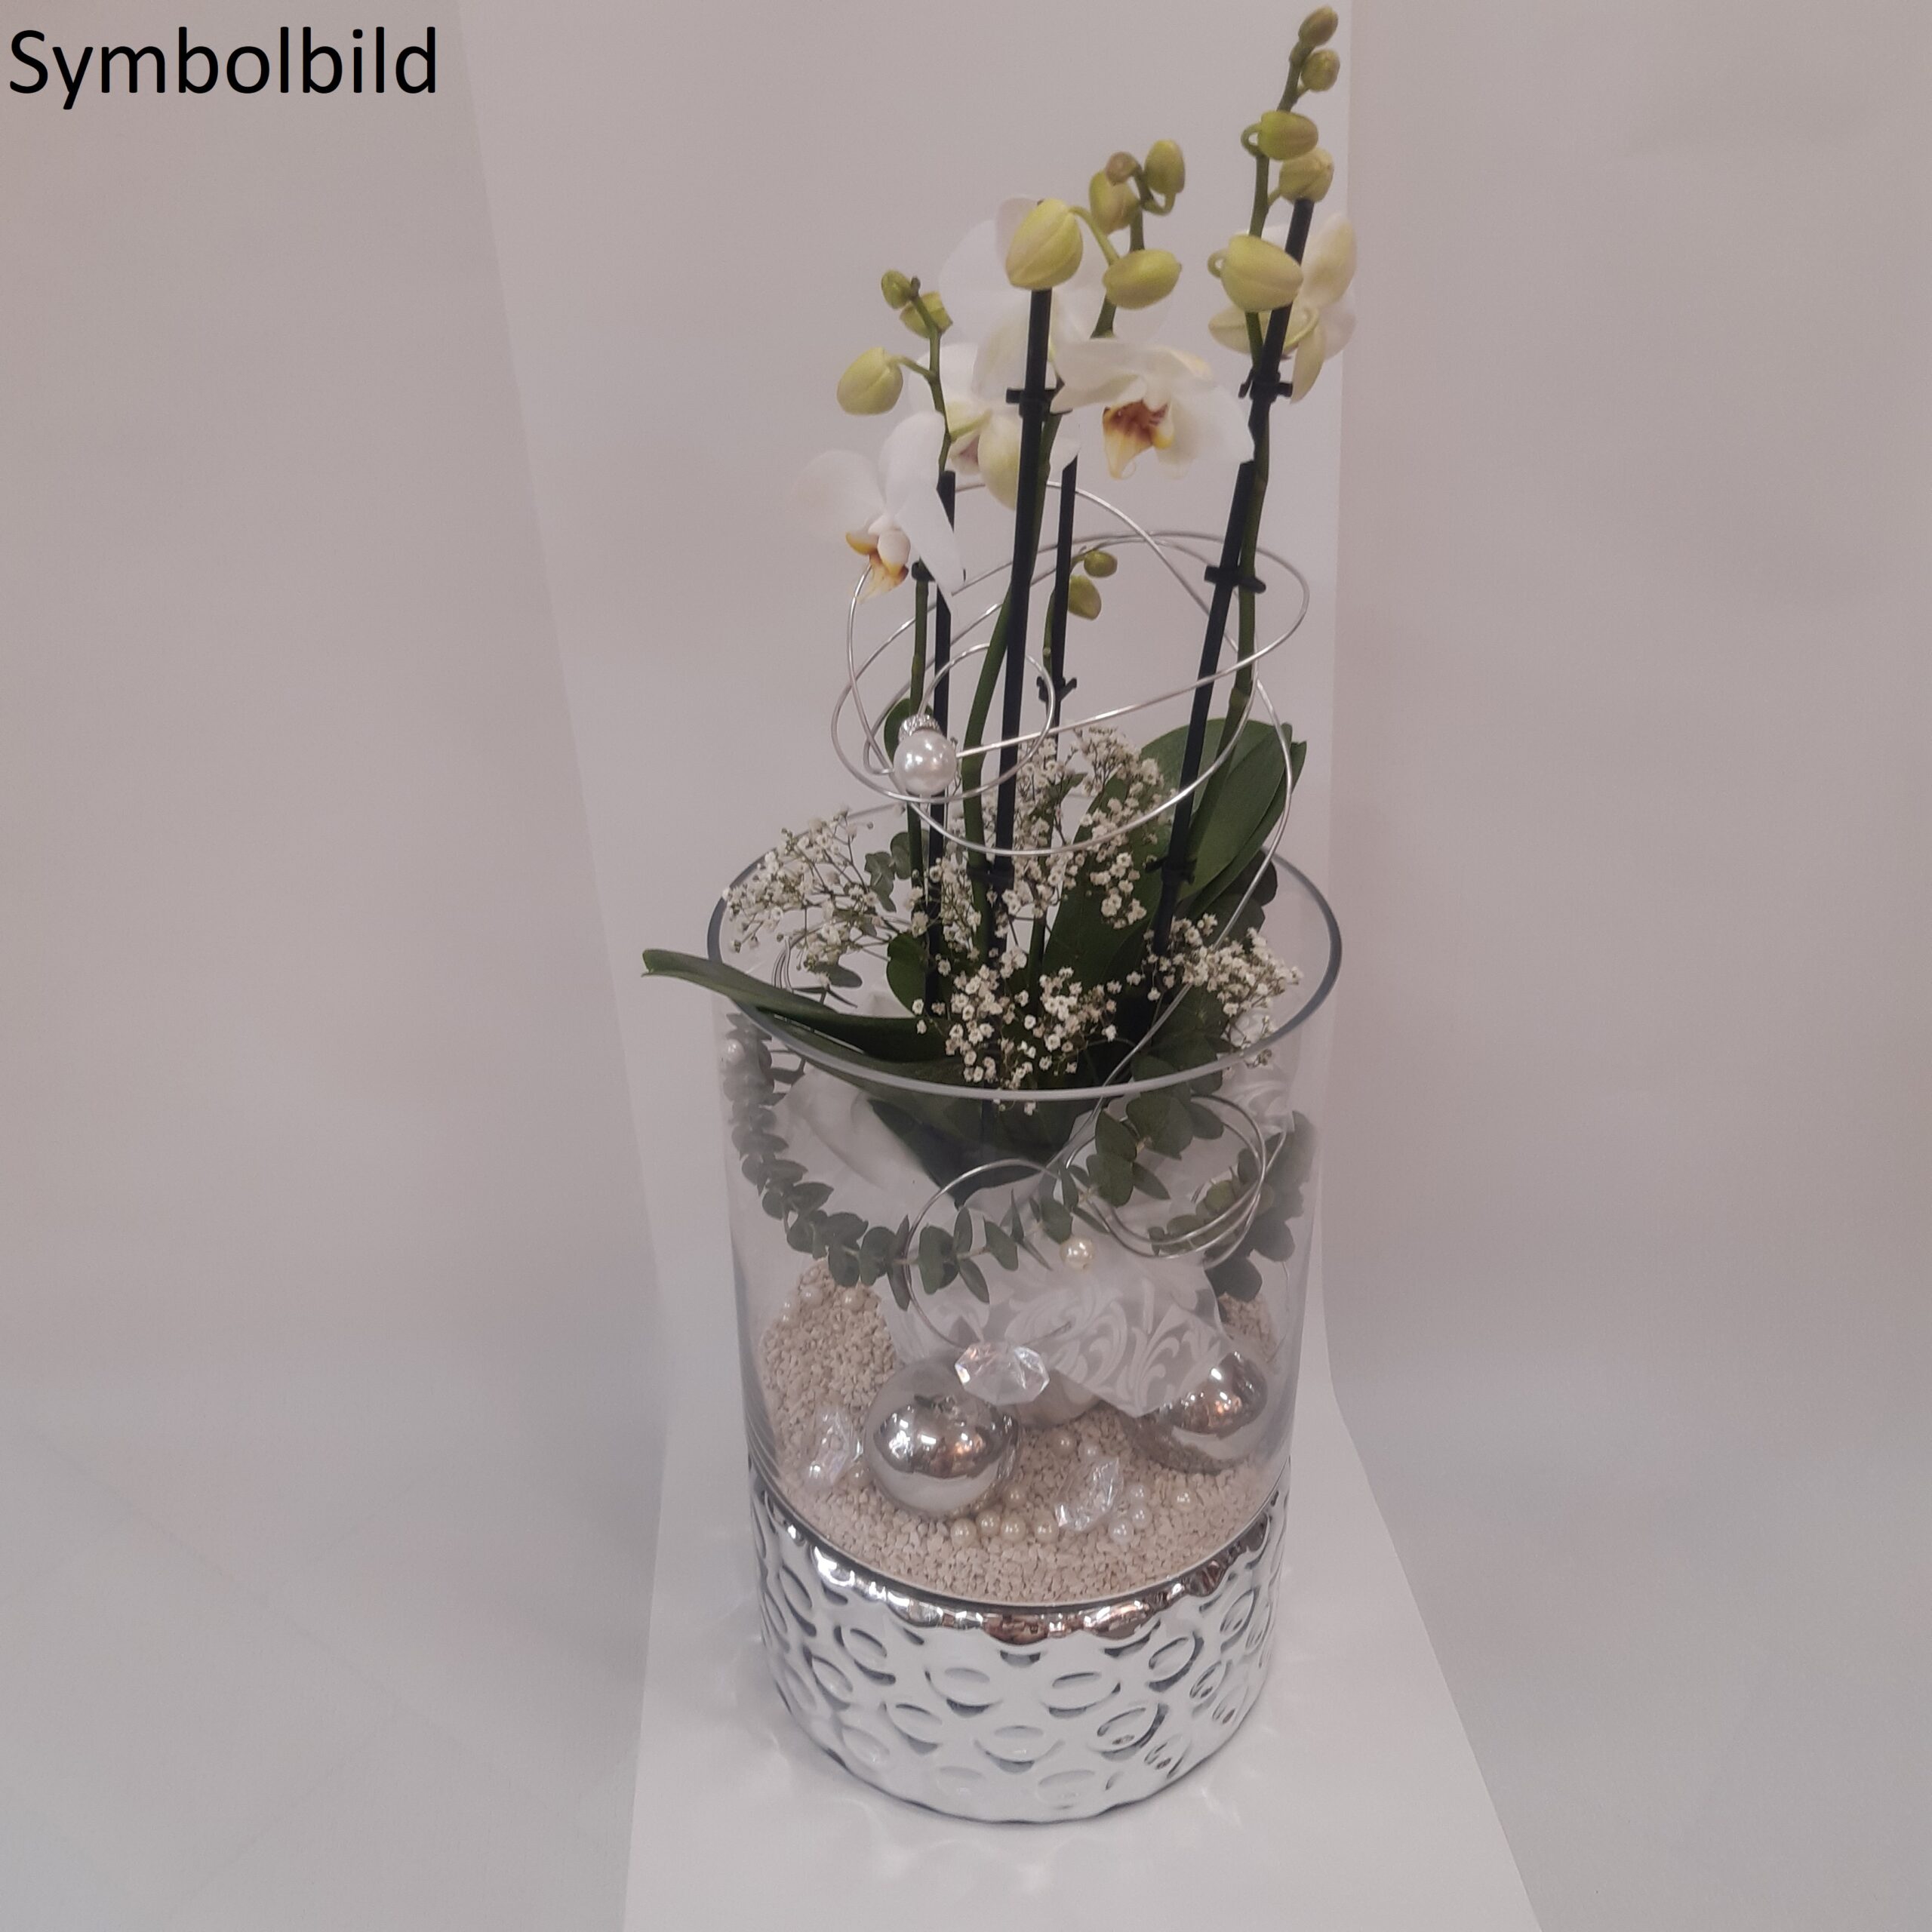 Orchidee im glas mit gelkugeln - Alle Favoriten unter allen analysierten Orchidee im glas mit gelkugeln